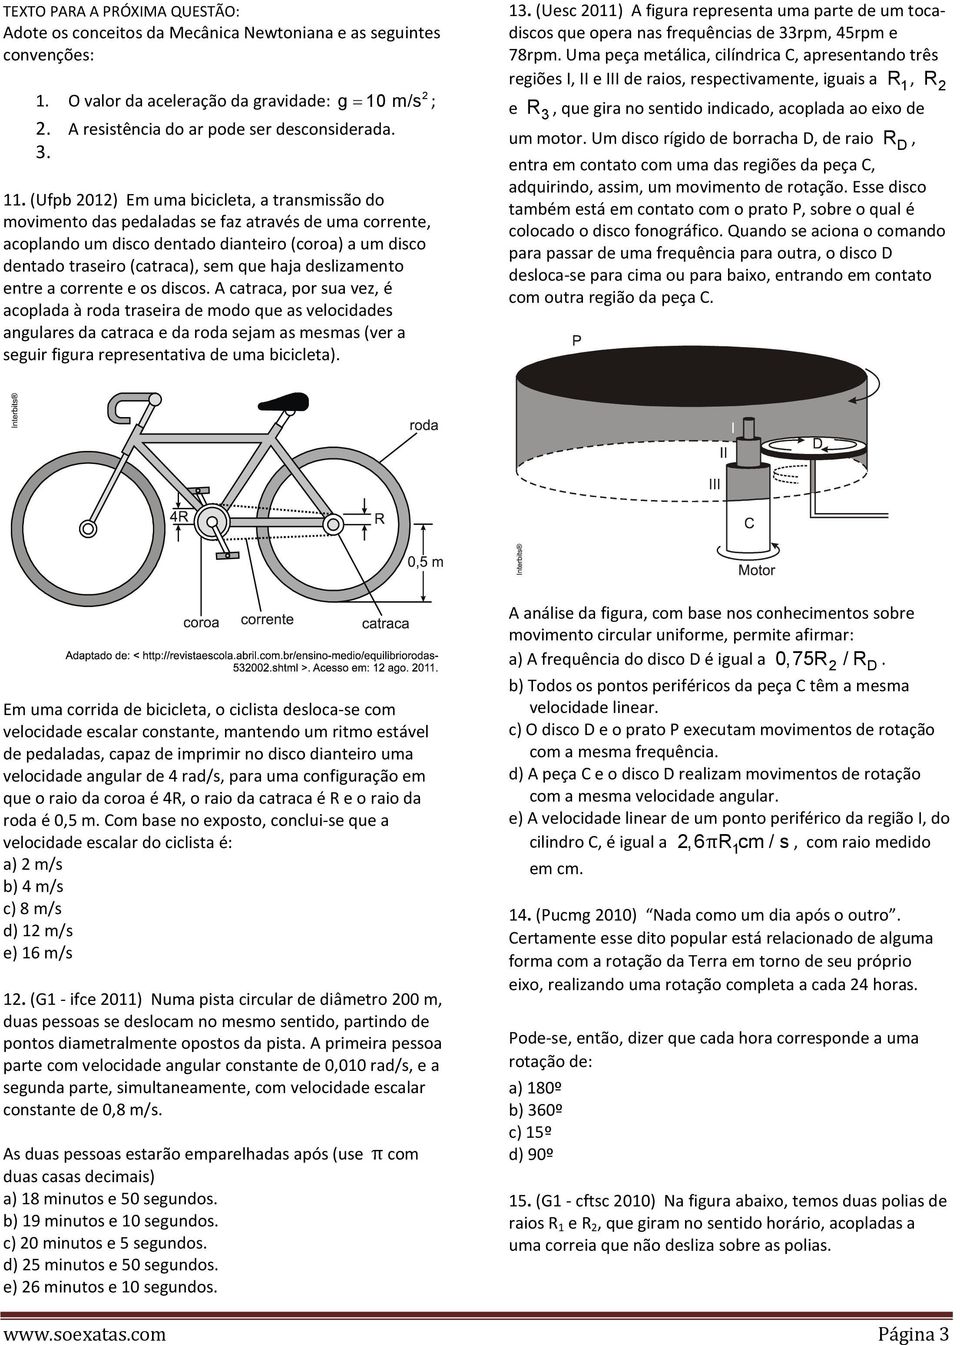 (Ufpb 2012) Em uma bicicleta, a transmissão do movimento das pedaladas se faz através de uma corrente, acoplando um disco dentado dianteiro (coroa) a um disco dentado traseiro (catraca), sem que haja